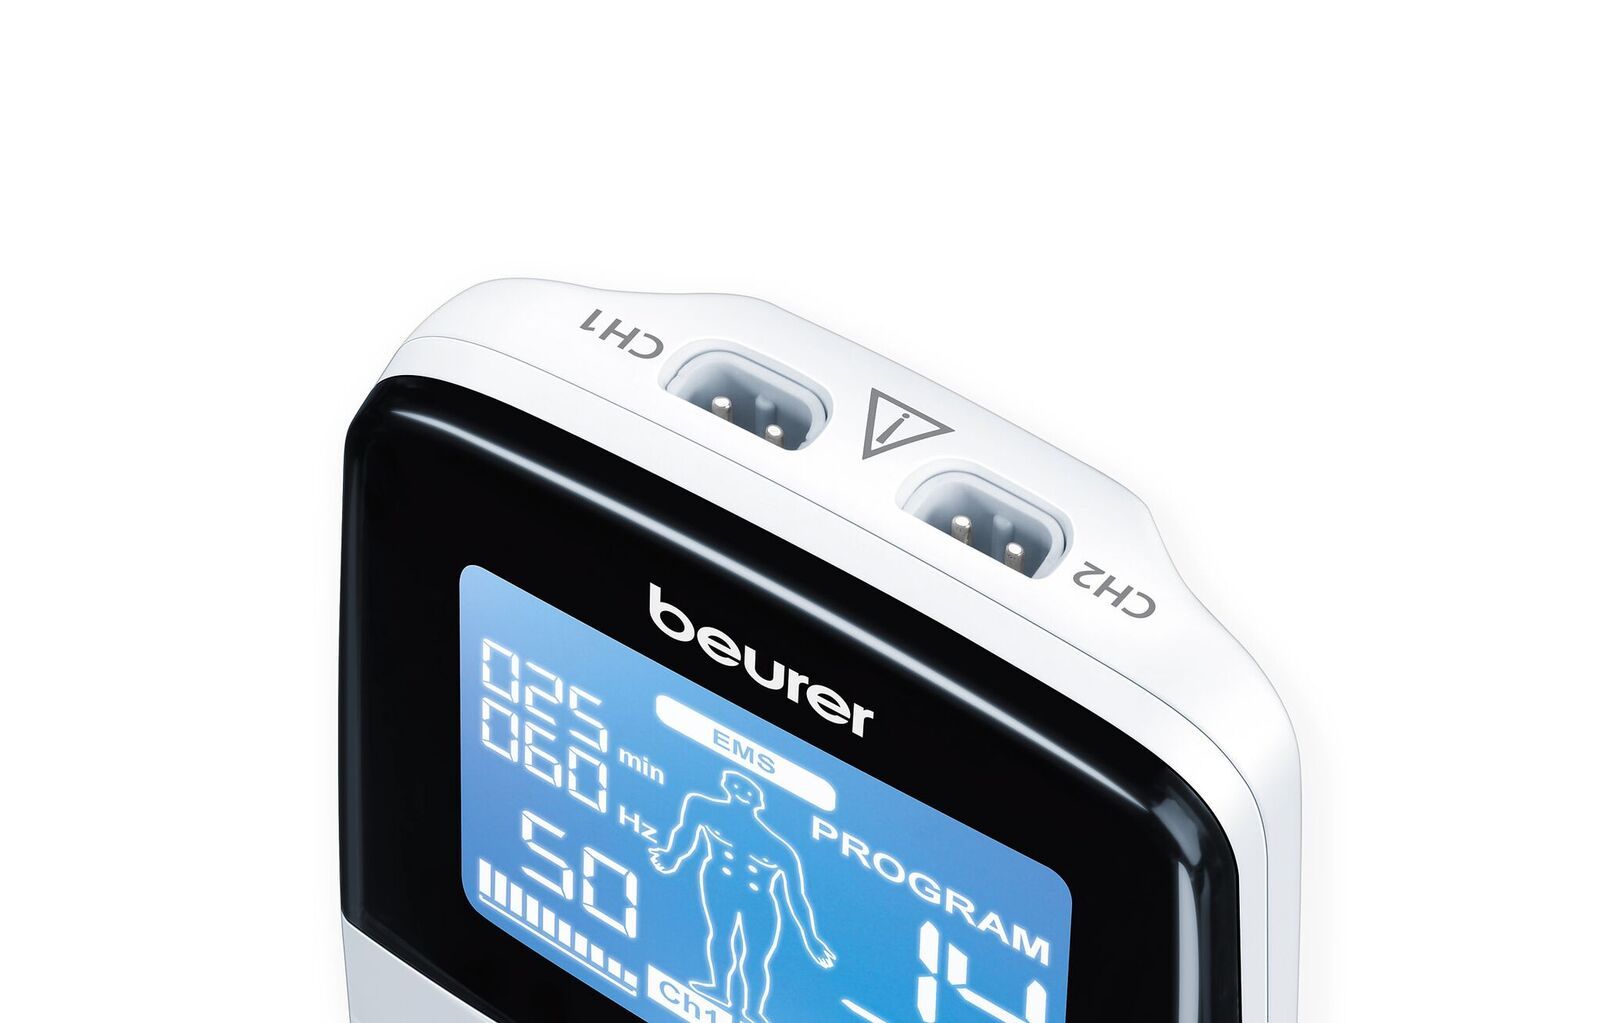 Beurer Digital EMS/TENS - Electrostimulator EM 49